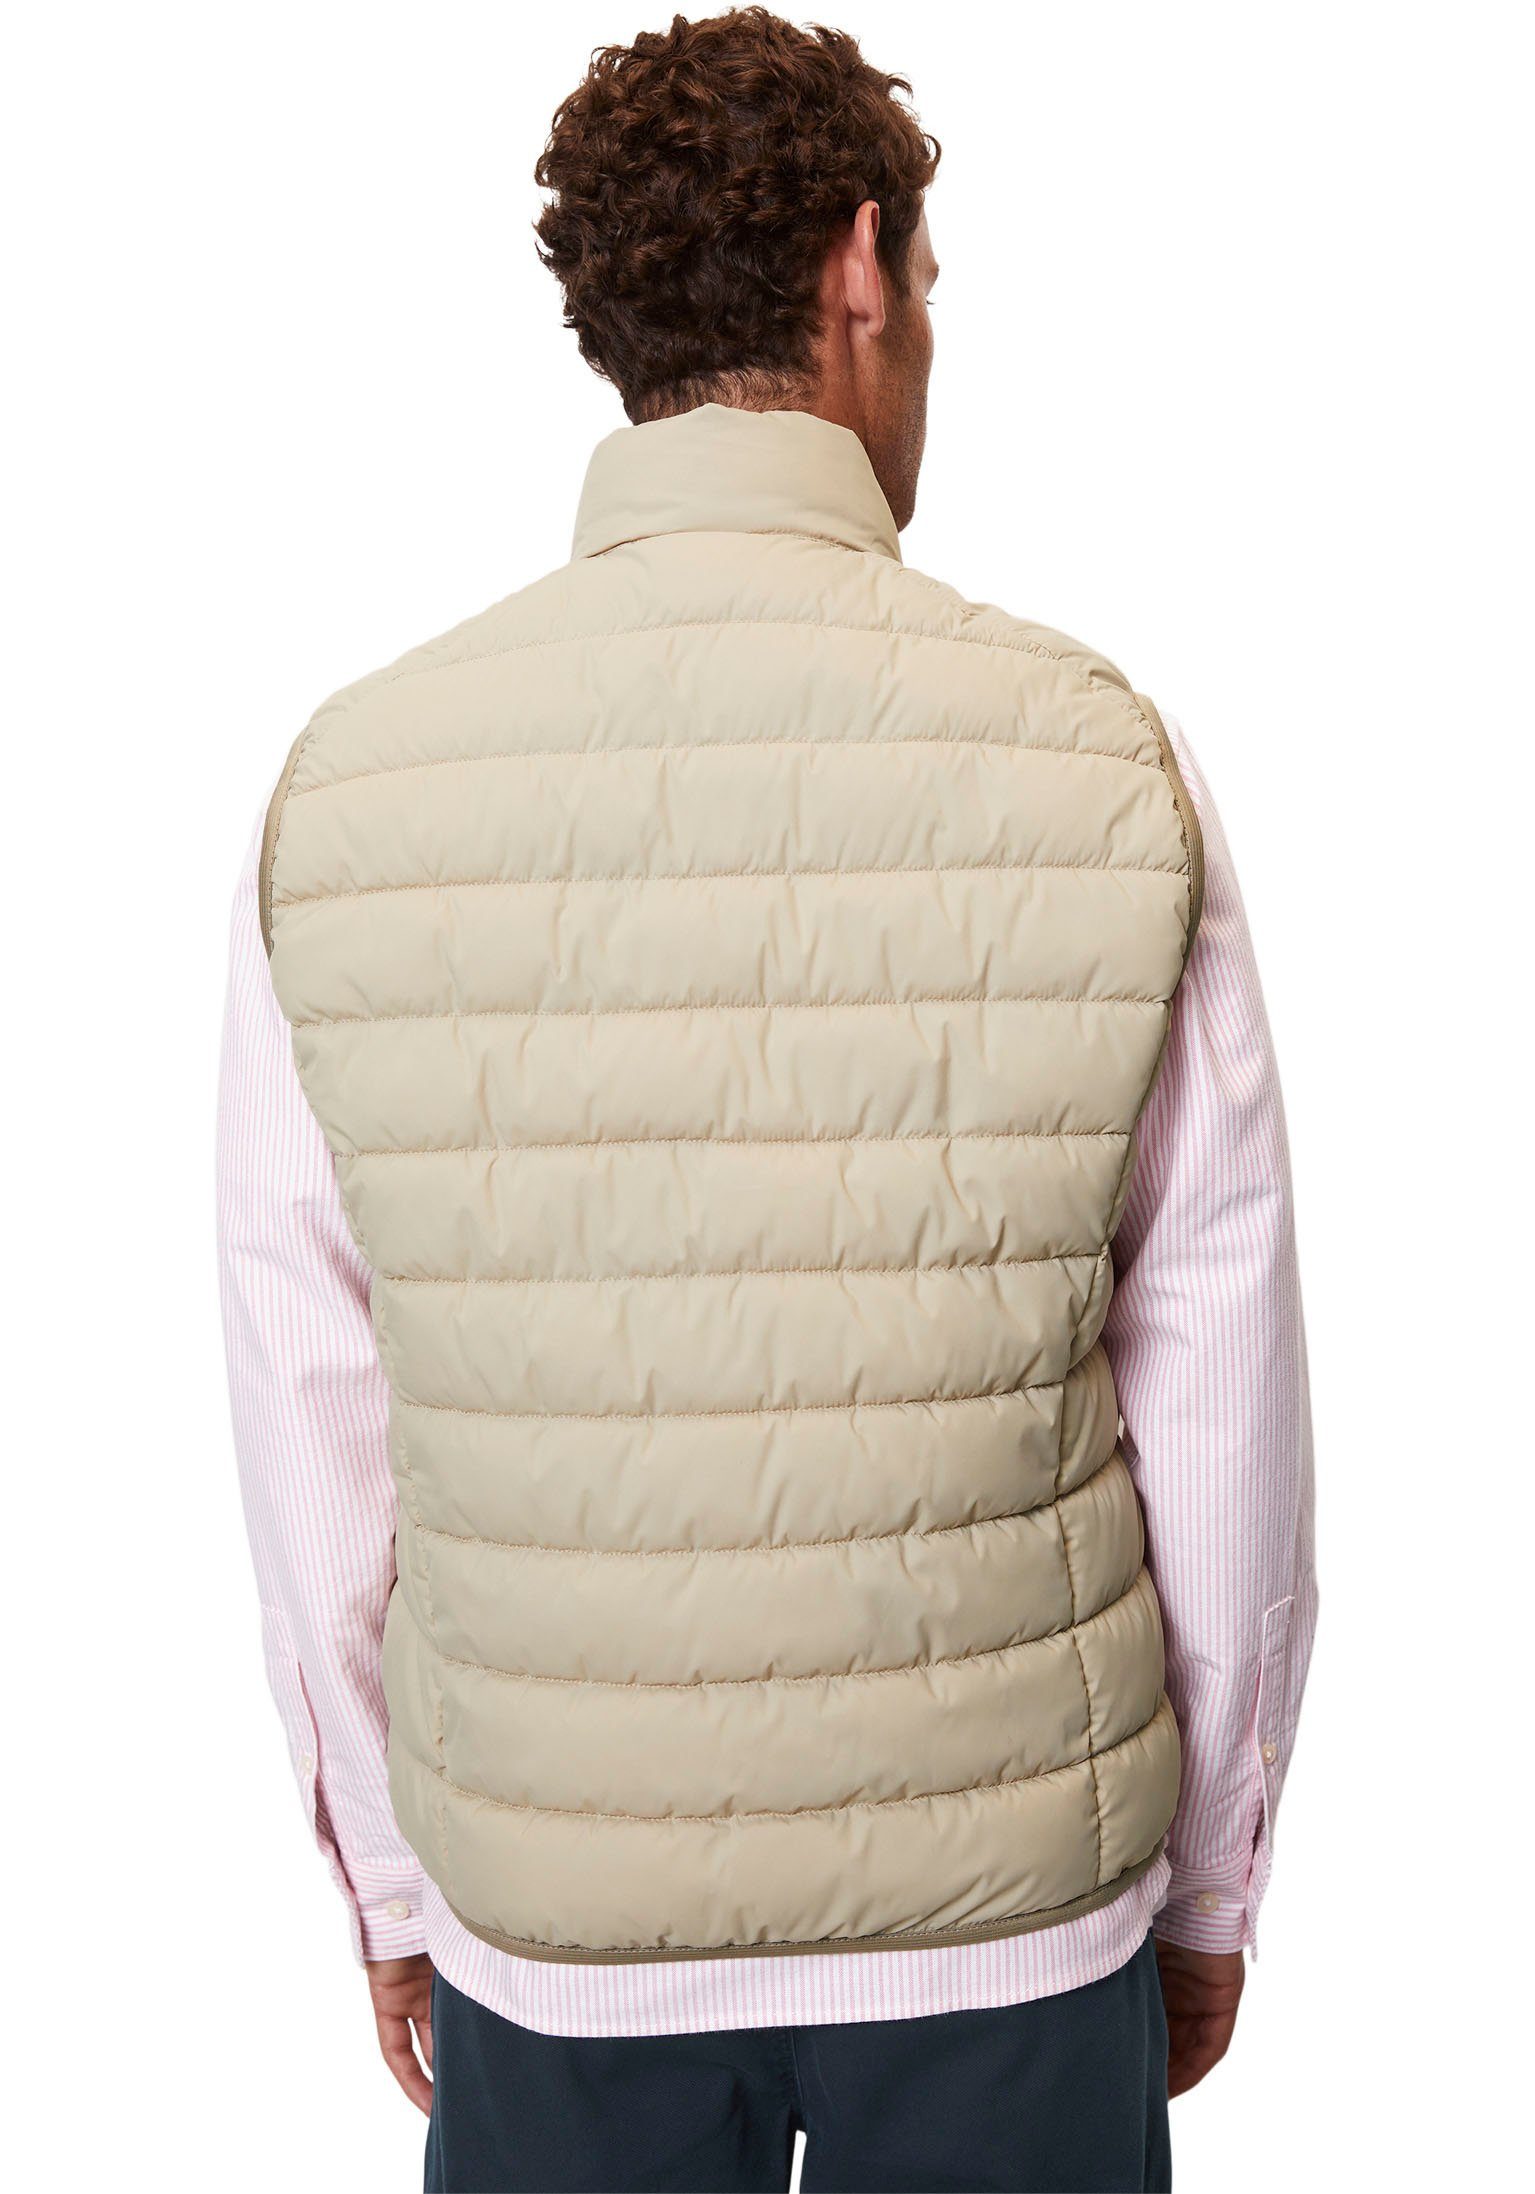 Marc O'Polo Steppweste Vest, sdnd, jonesboro collar Oberfläche mit wasserabweisender cream stand-up